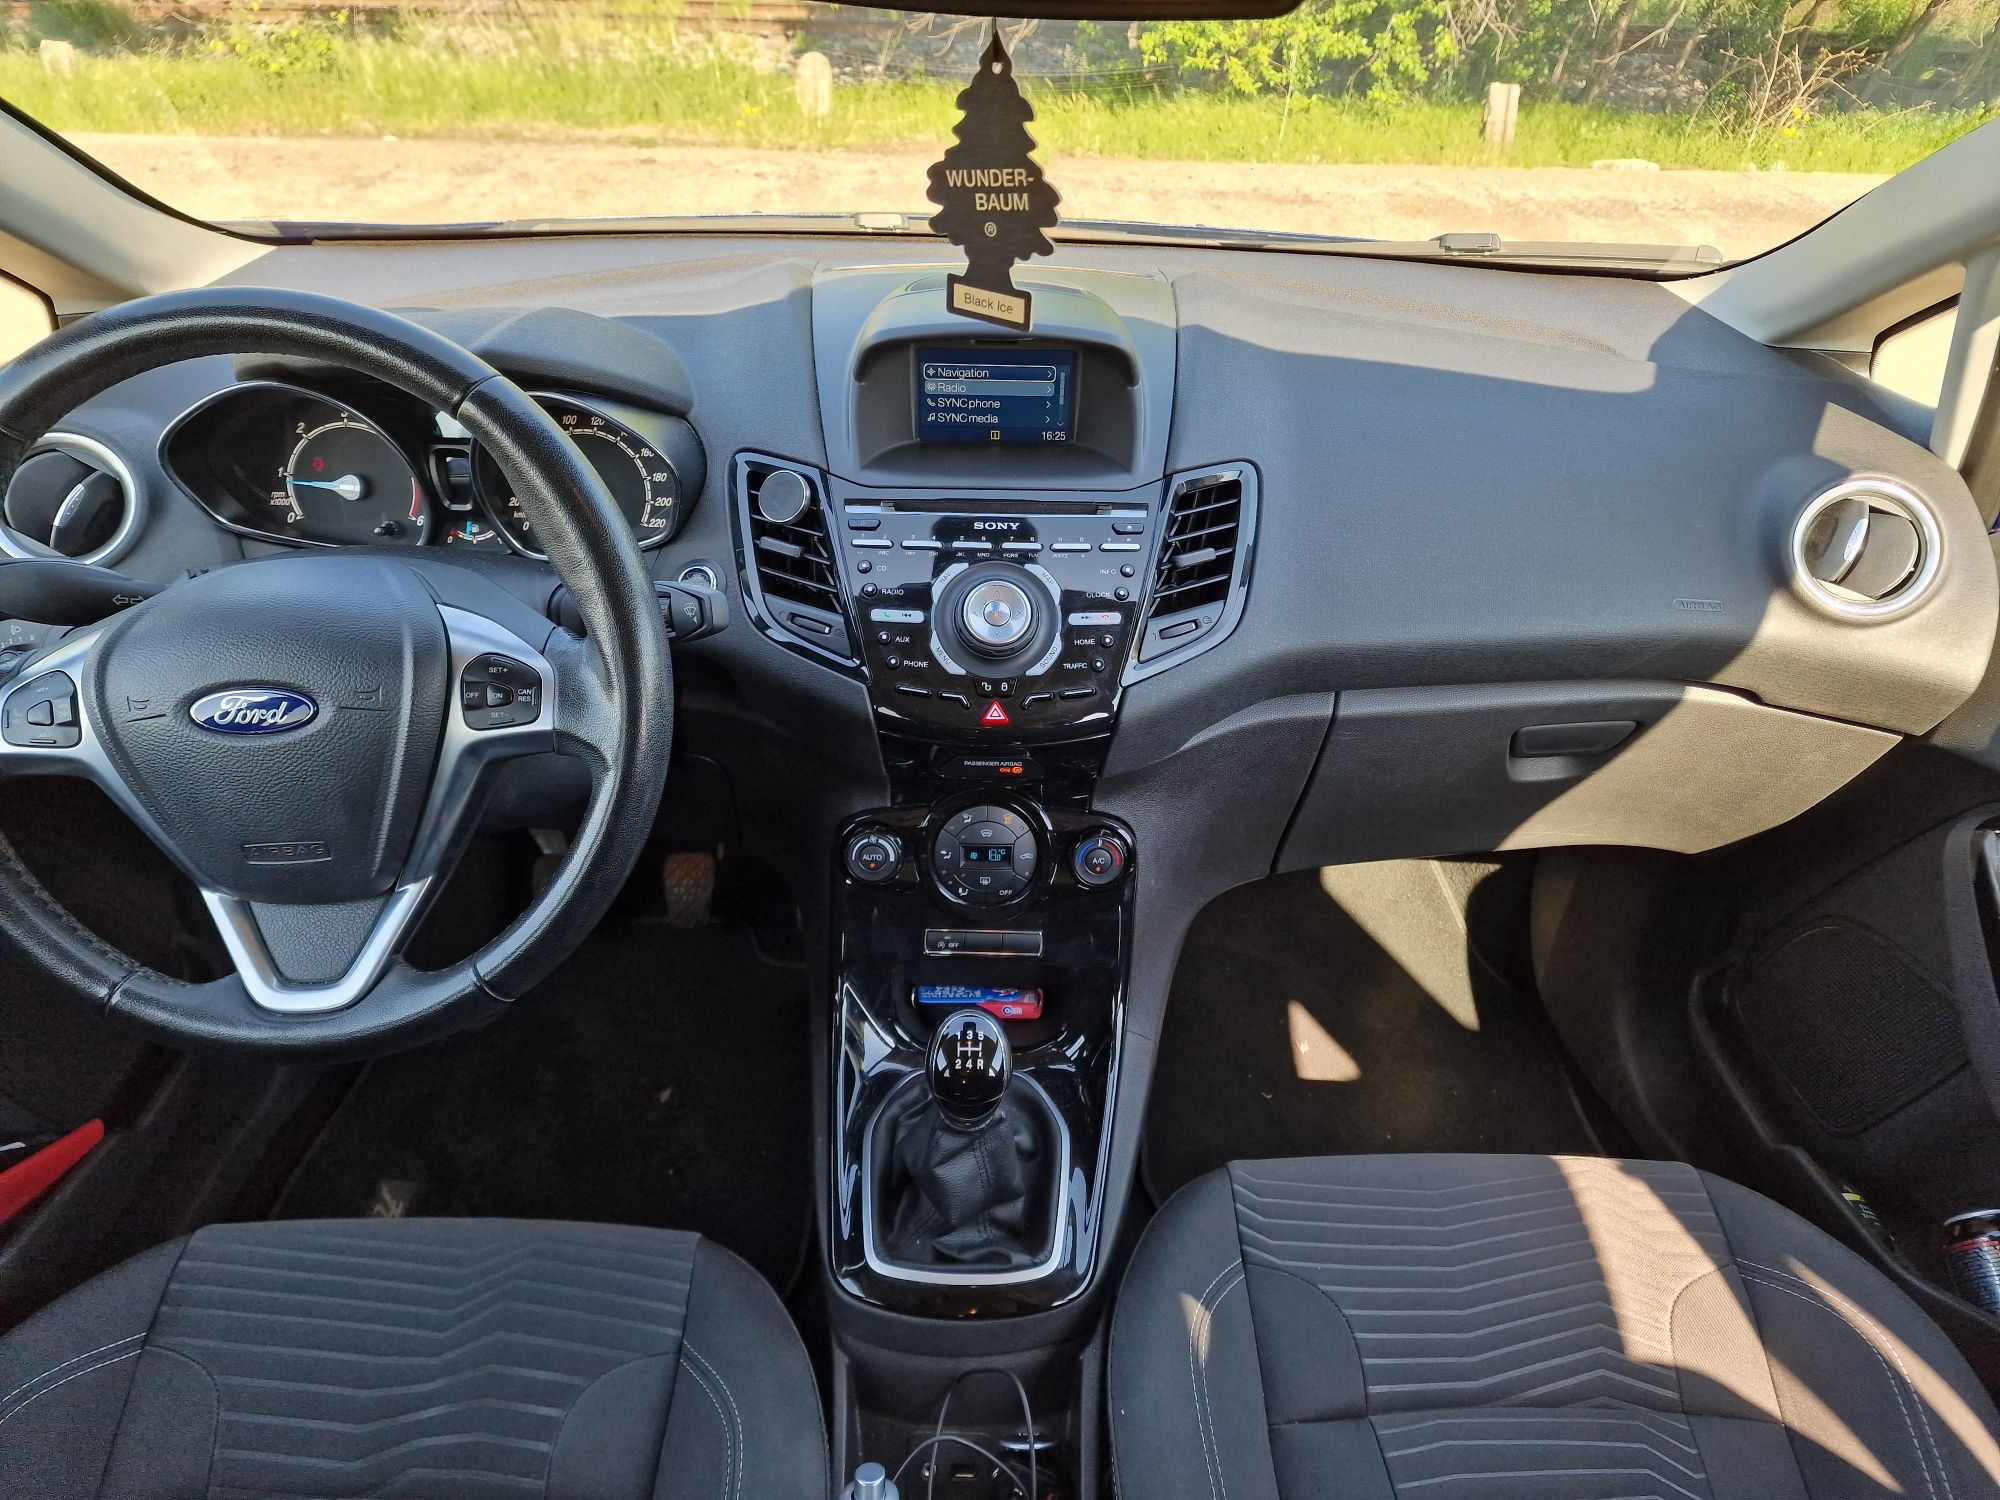 Ford Fiesta 1.6 TDCi 95 cp Titanium Facelift an 2014